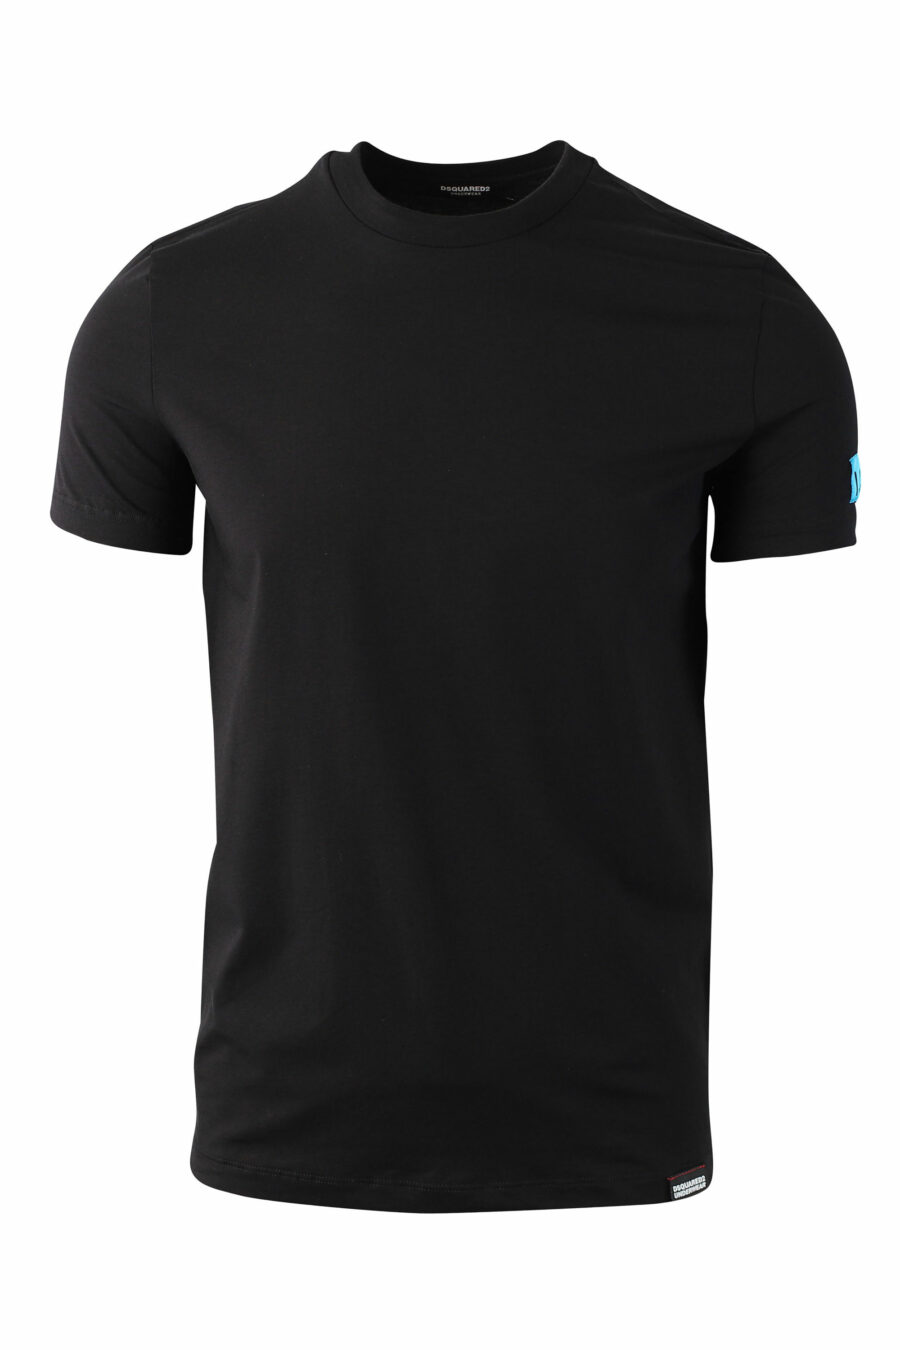 Camiseta negra con minilogo "icon" azul en manga - IMG 0038 1